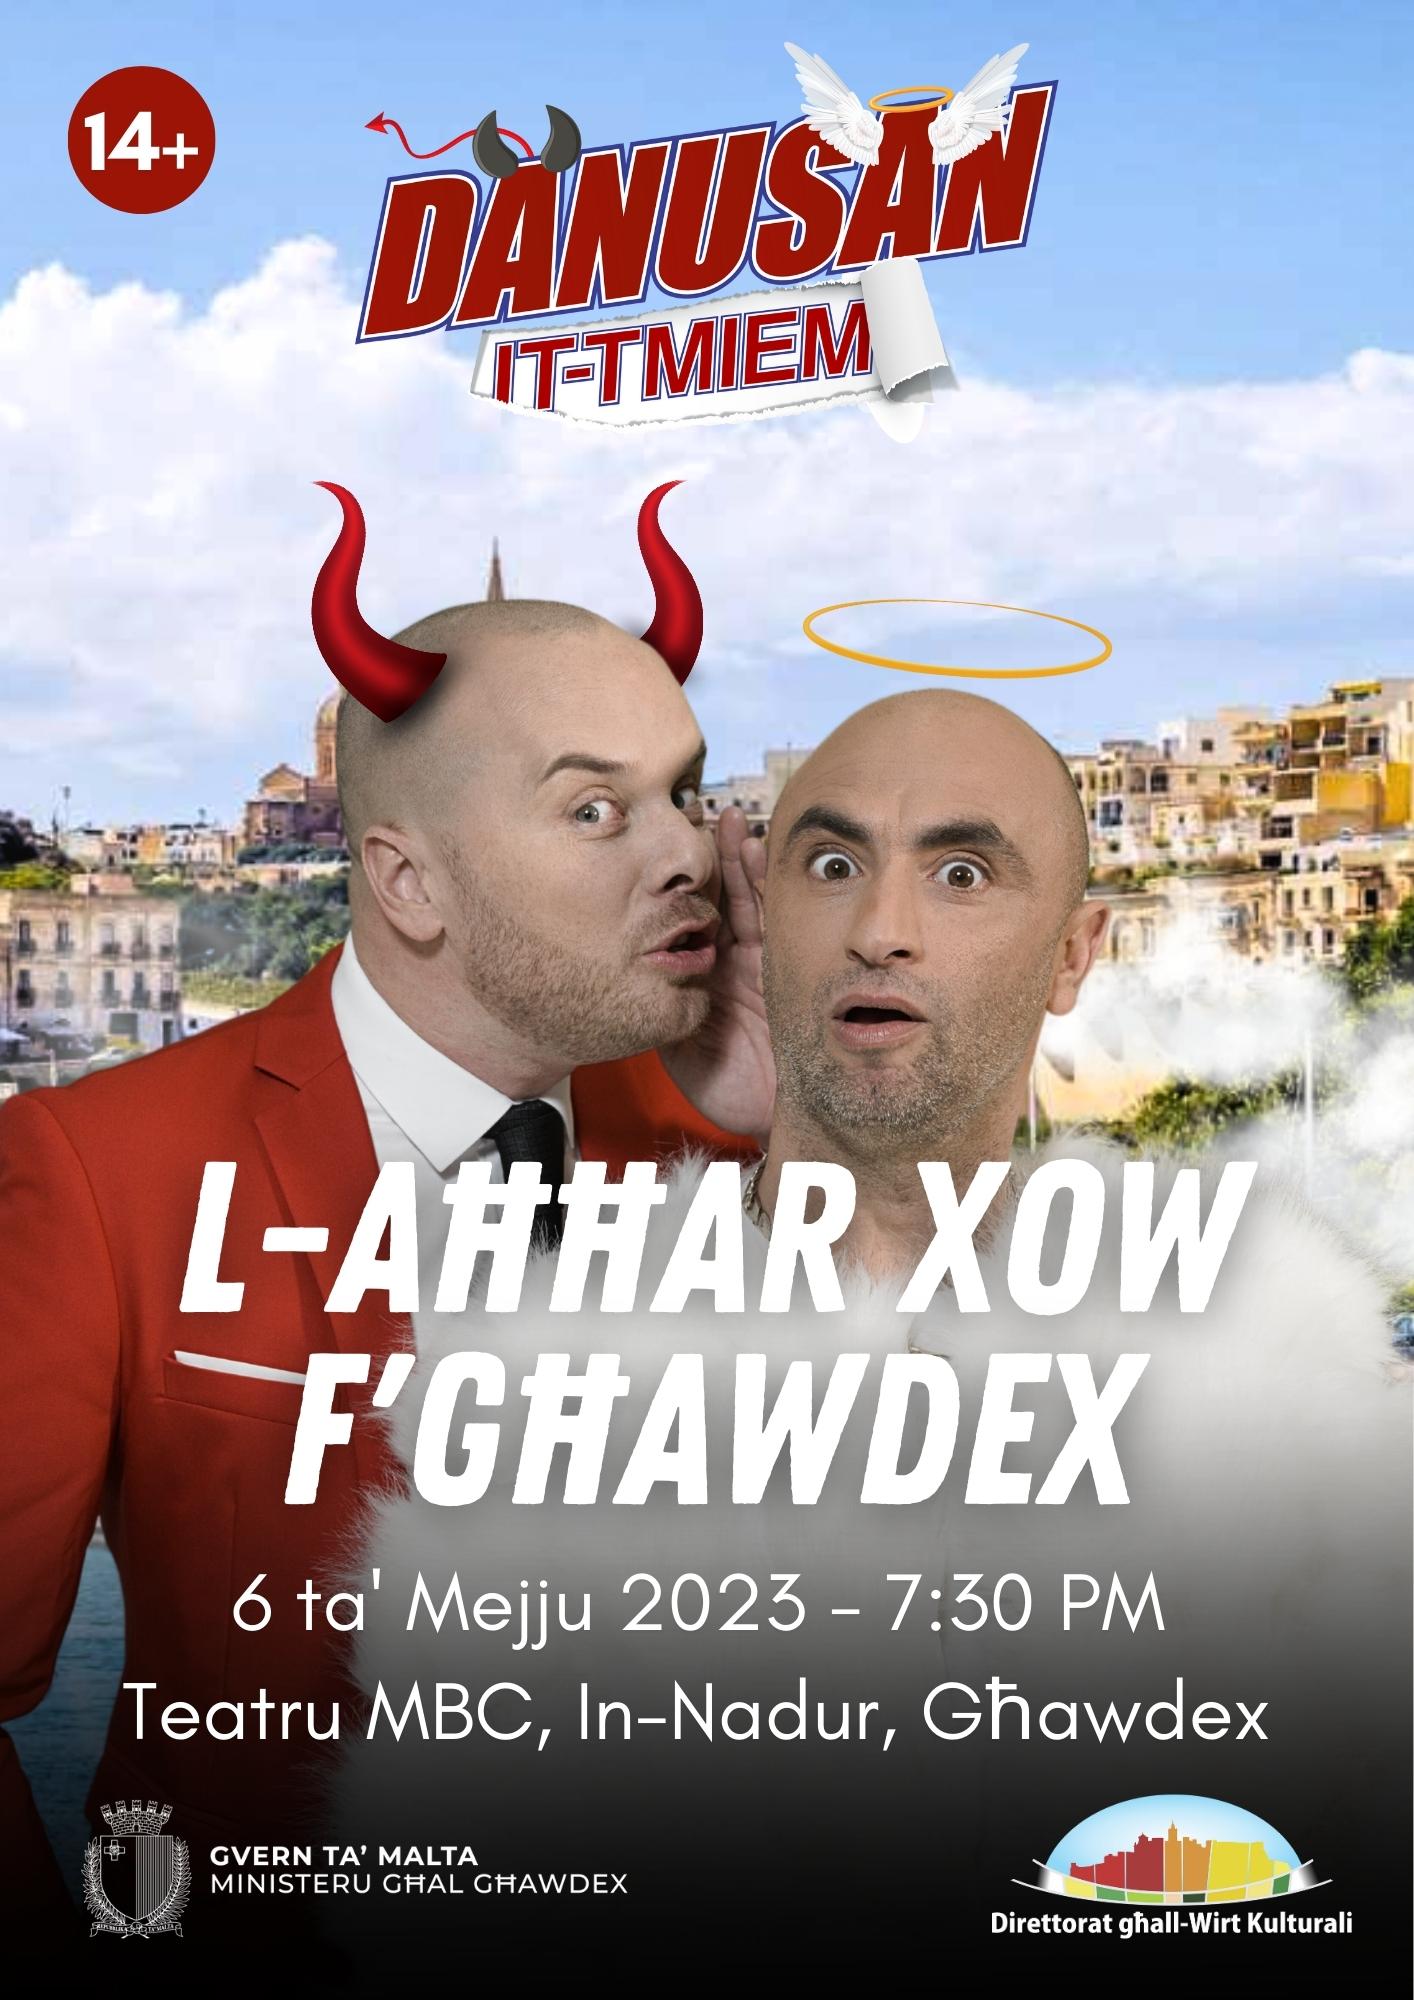 L-Aħħar Xow F'Għawdex tad-Danusan - It-Tmiem poster